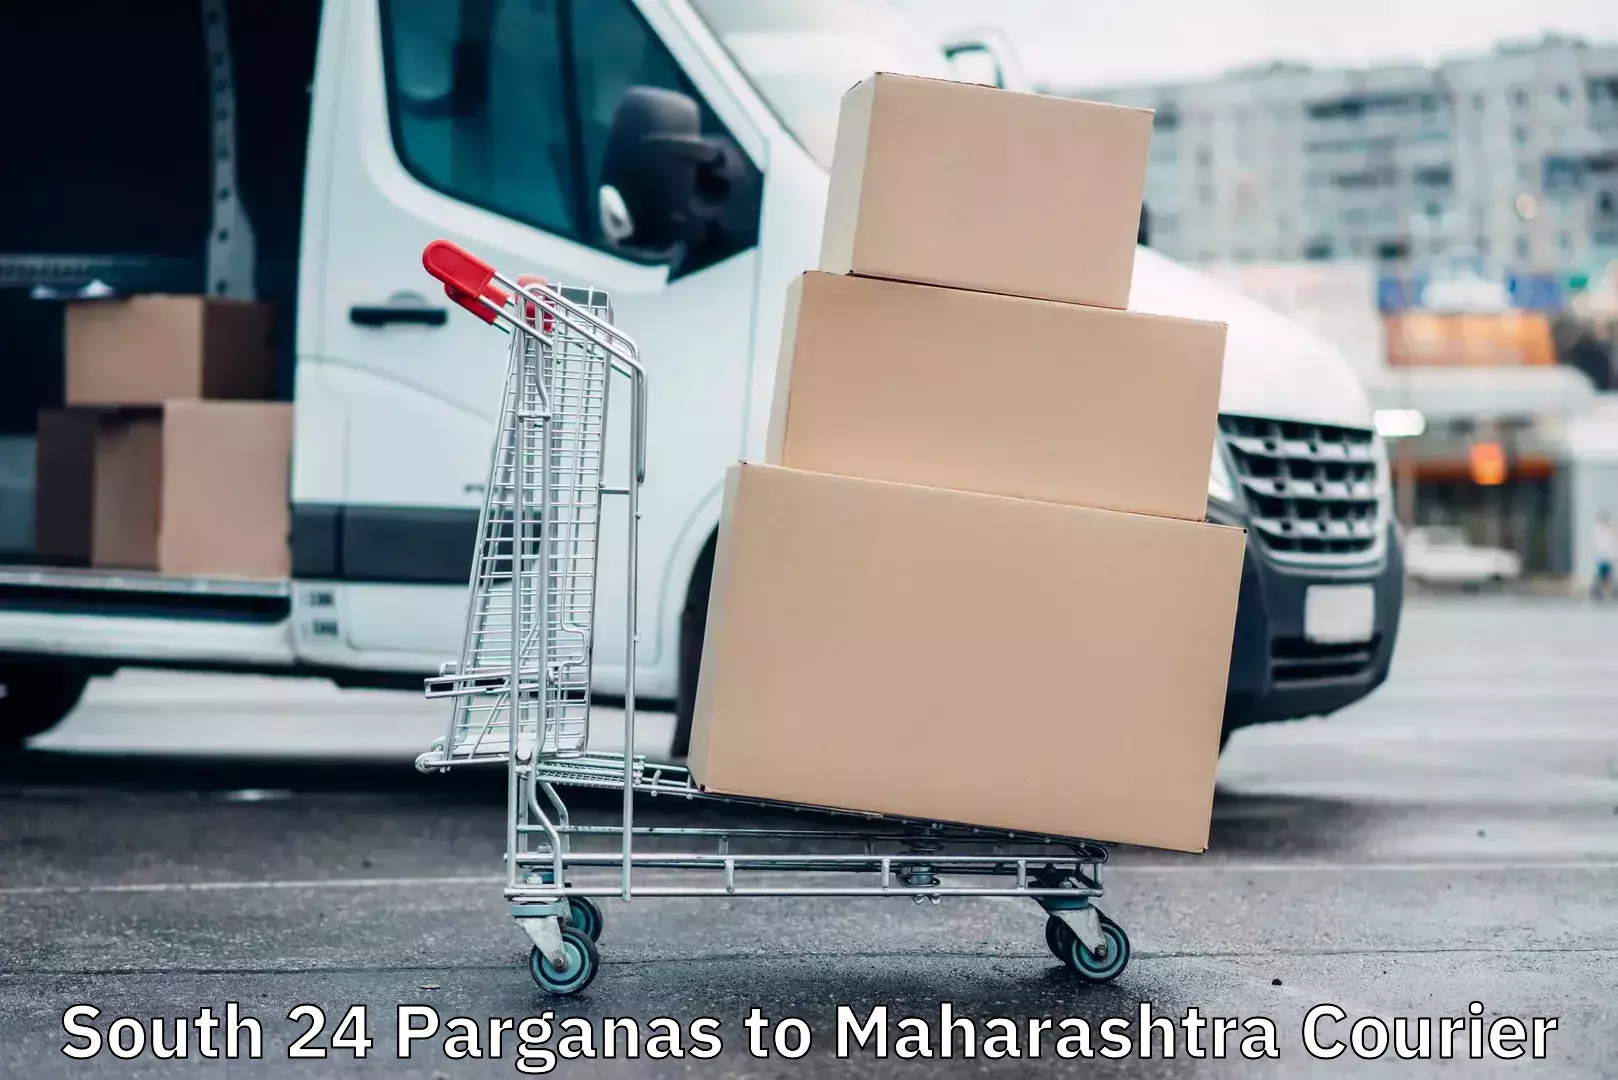 Express logistics South 24 Parganas to Maharashtra